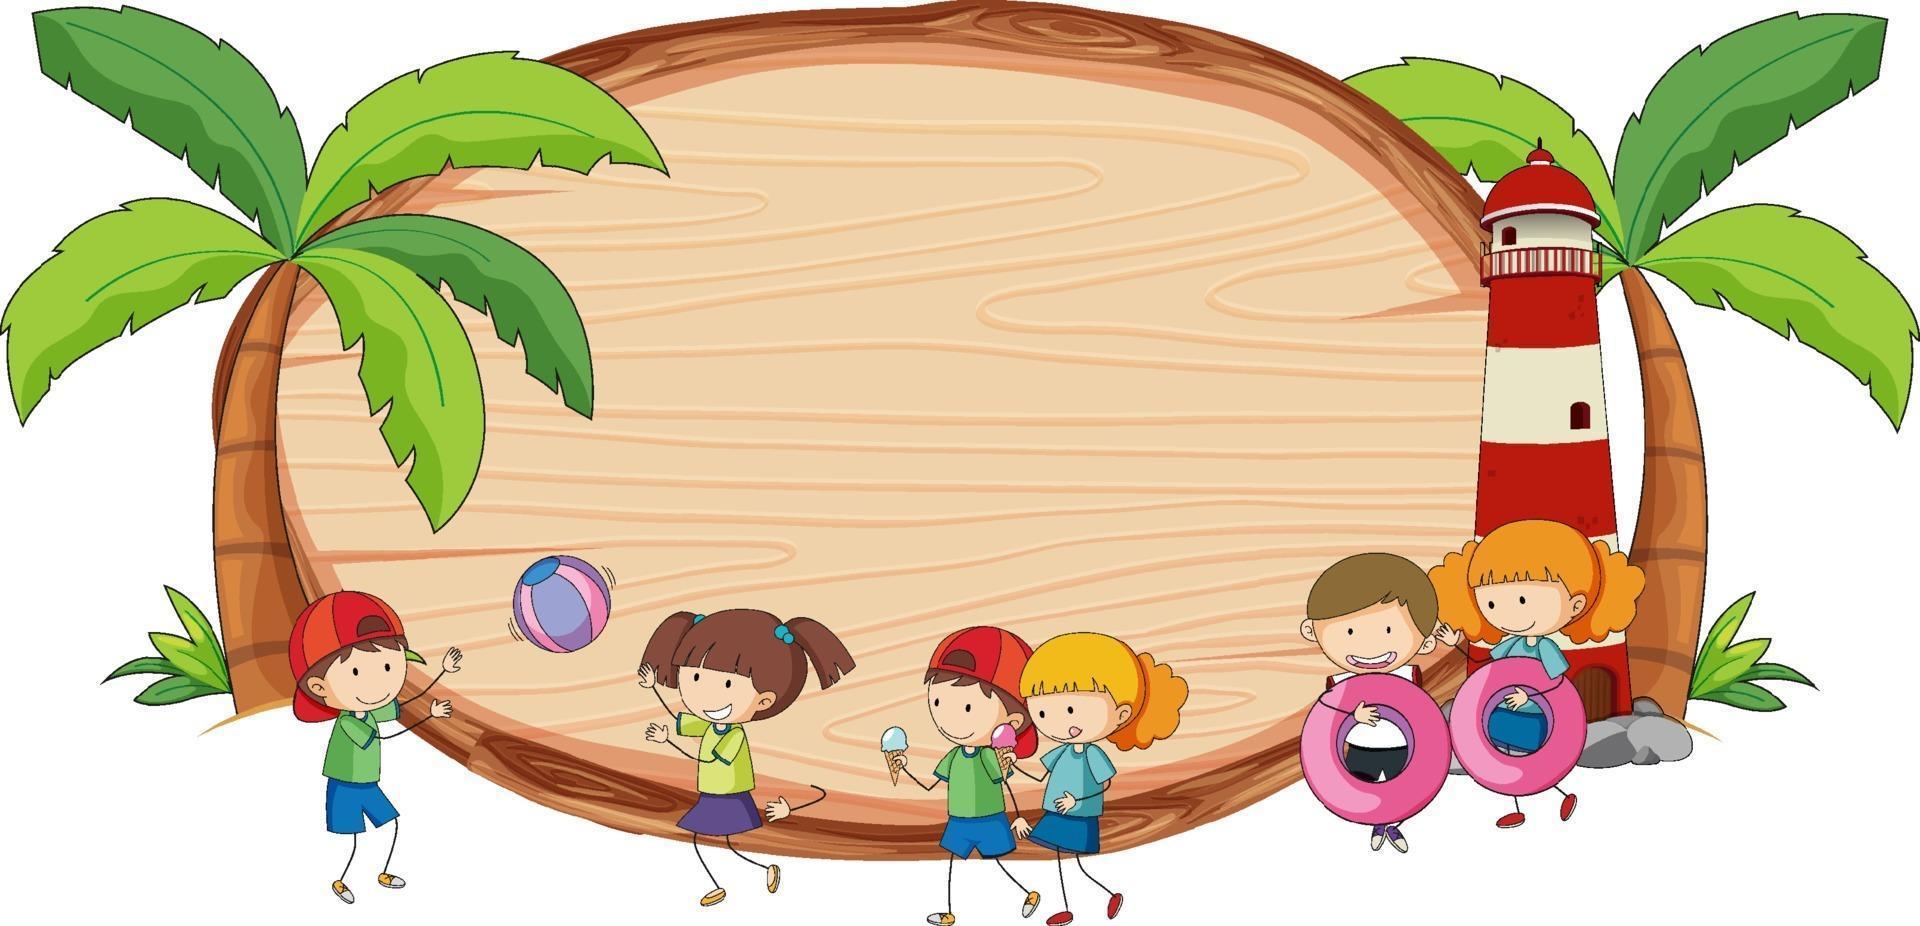 placa de madeira em branco em forma oval com crianças doodle personagem de desenho animado vetor